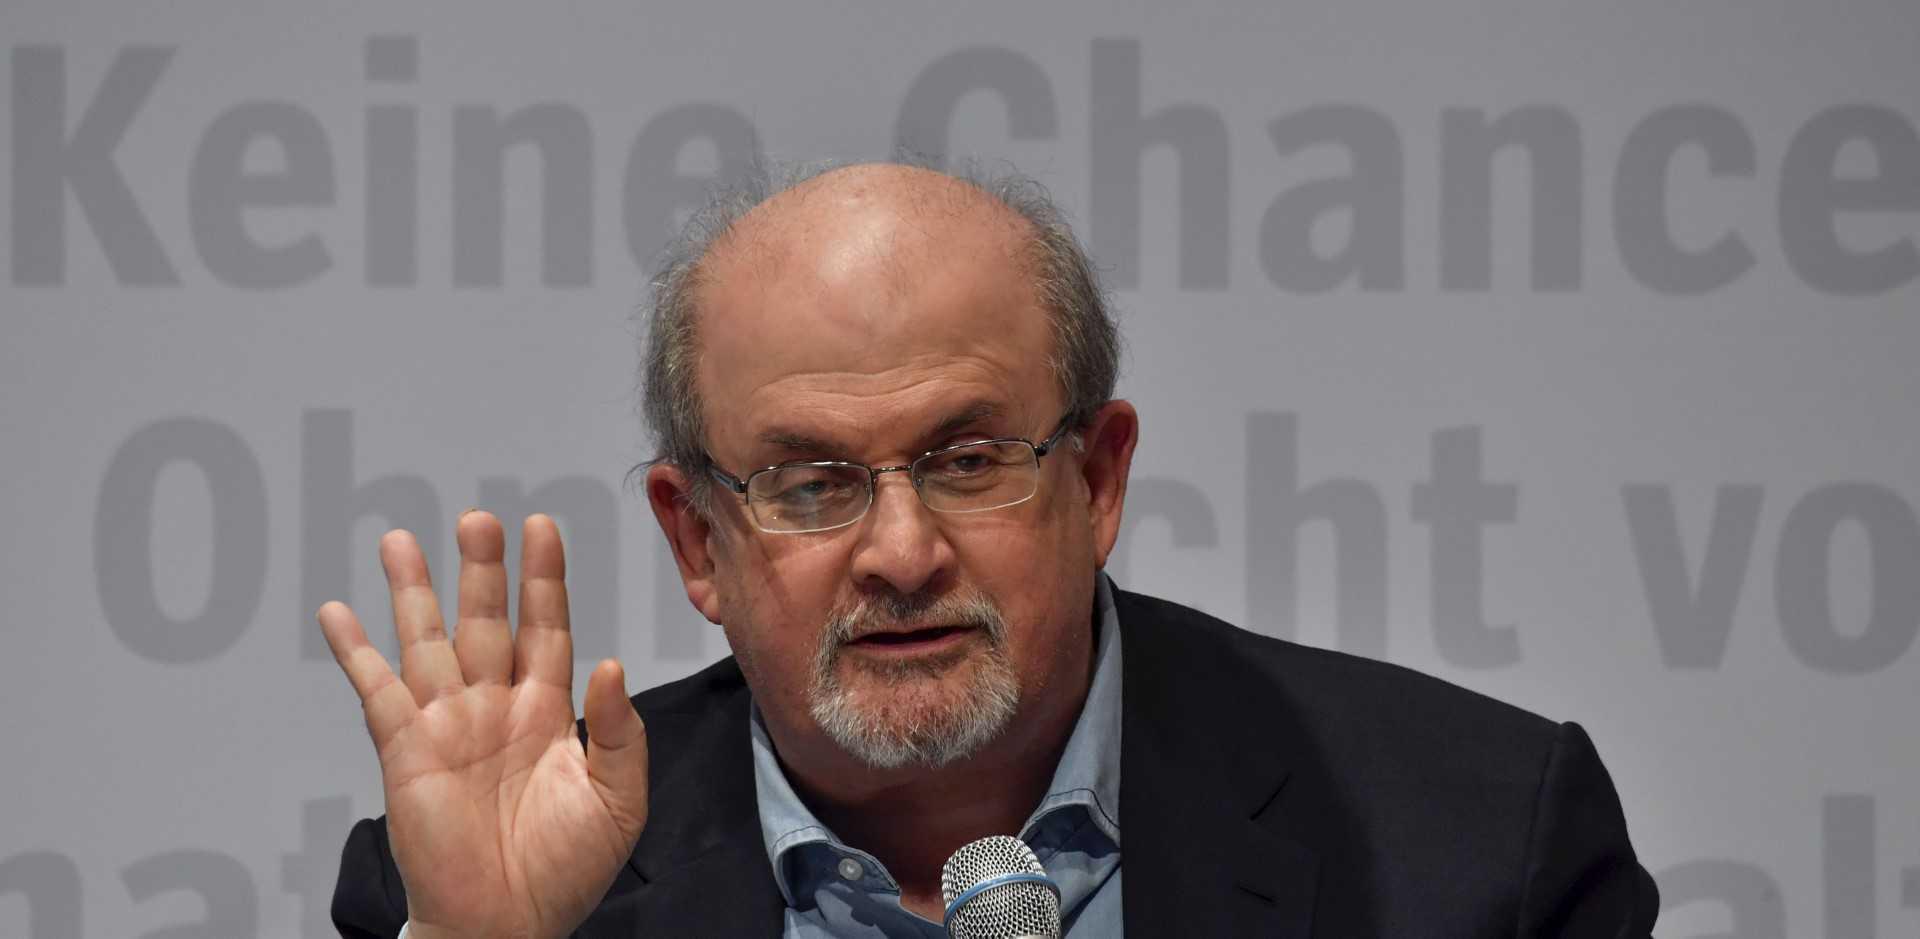 Novelis Salman Rushdie ketika berucap di Frankfurt Book Fair 2017, Jerman pada 12 Oktober 2017. Gambar: AFP